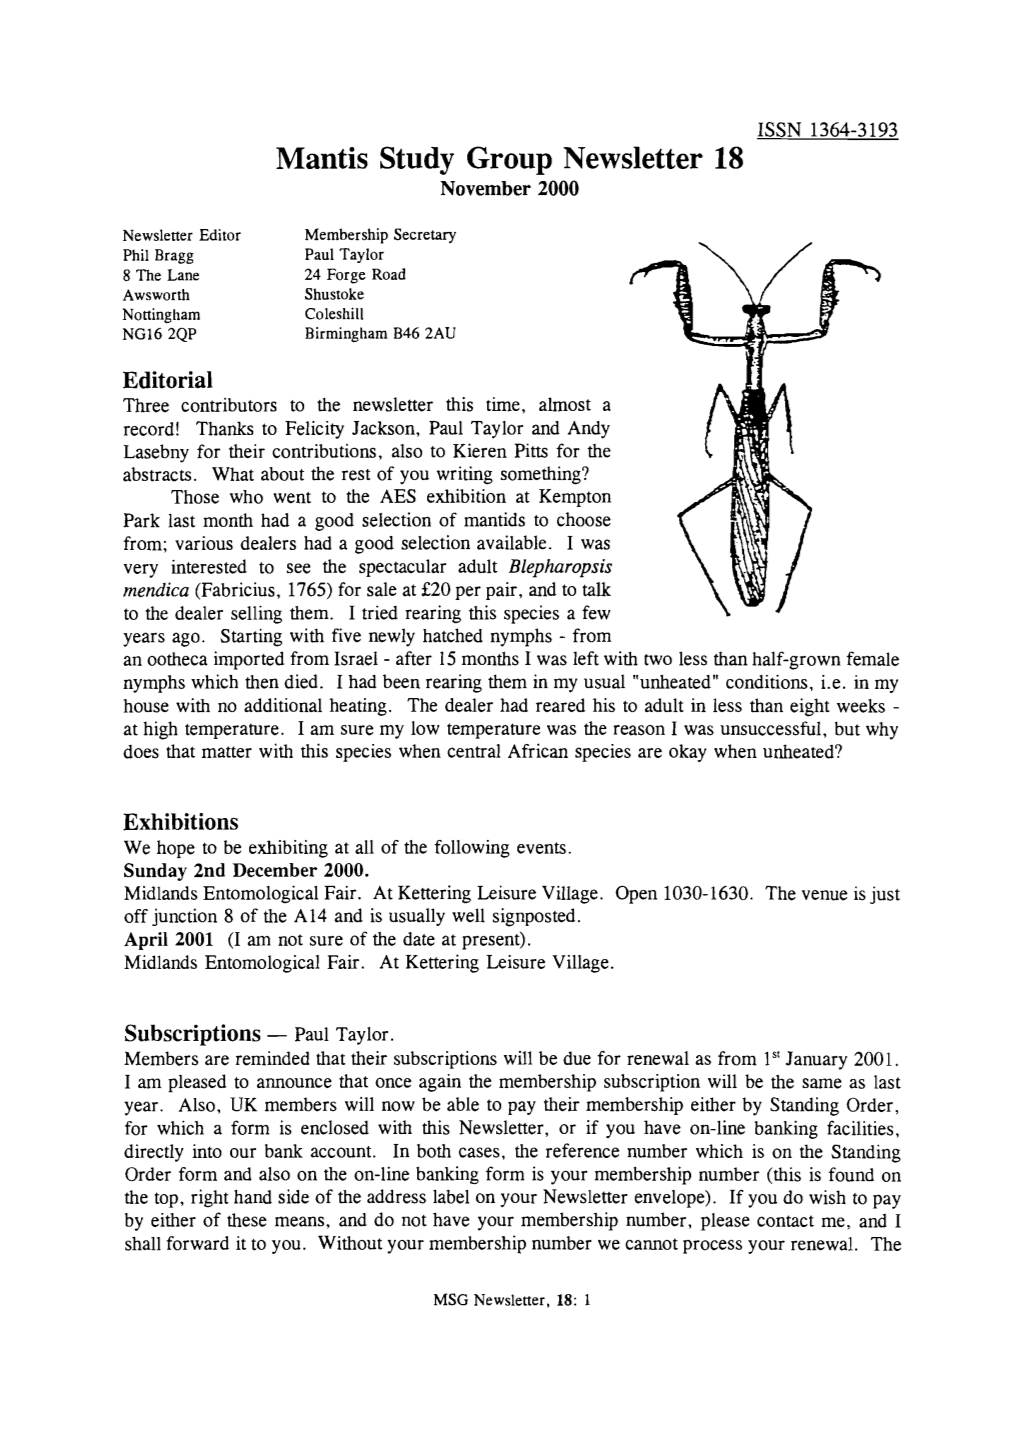 Mantis Study Group Newsletter 18 (November 2000)